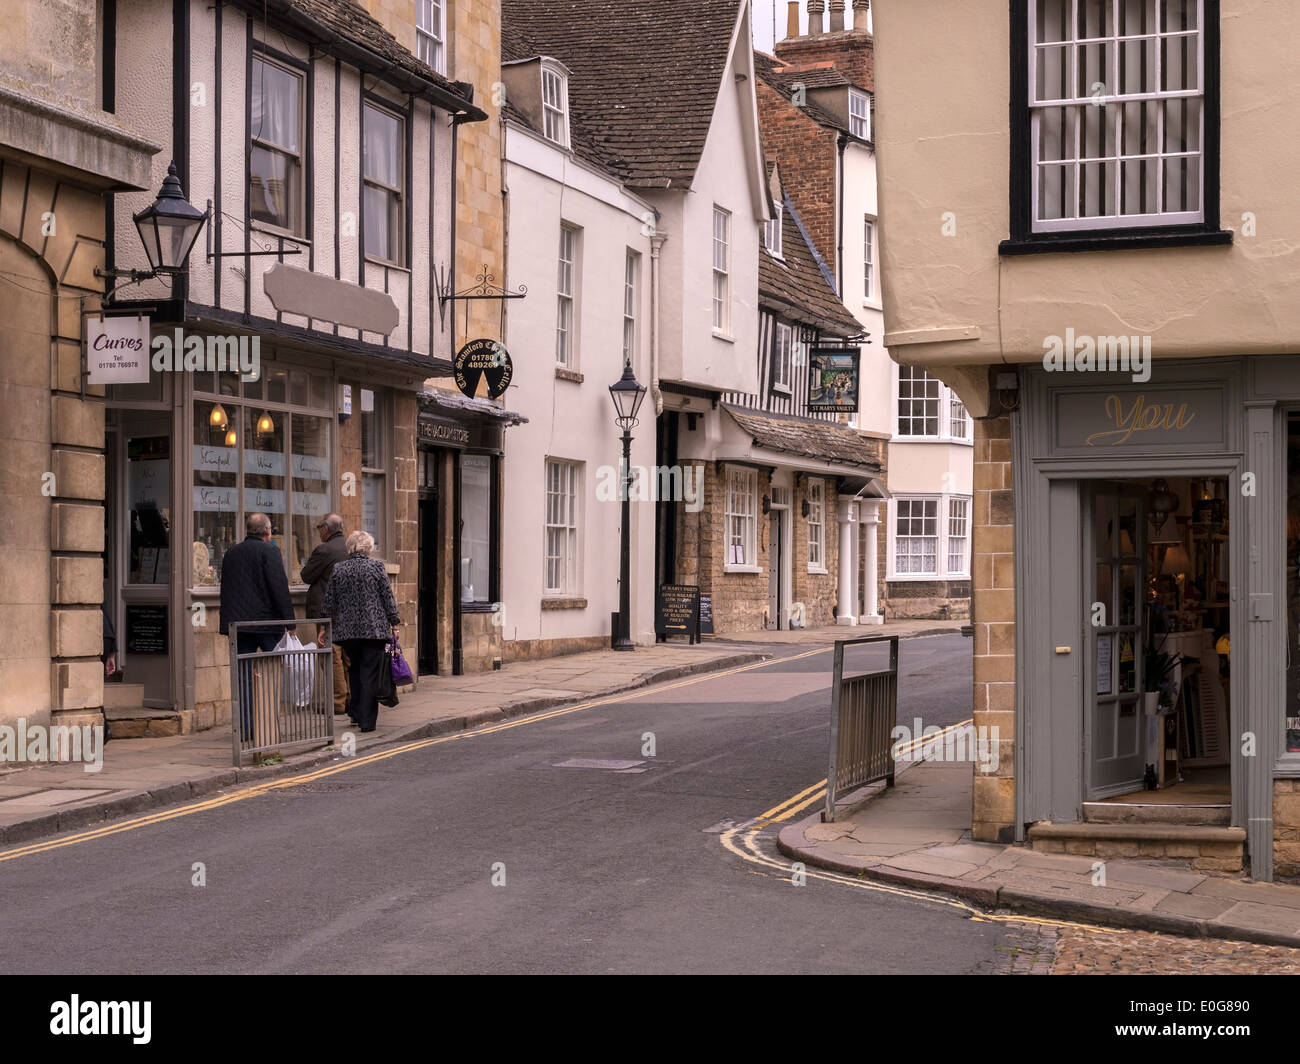 Ancienne boutique traditionnelle des fronts et des bâtiments en pierre, Stamford, Lincolnshire, Angleterre, RU Banque D'Images